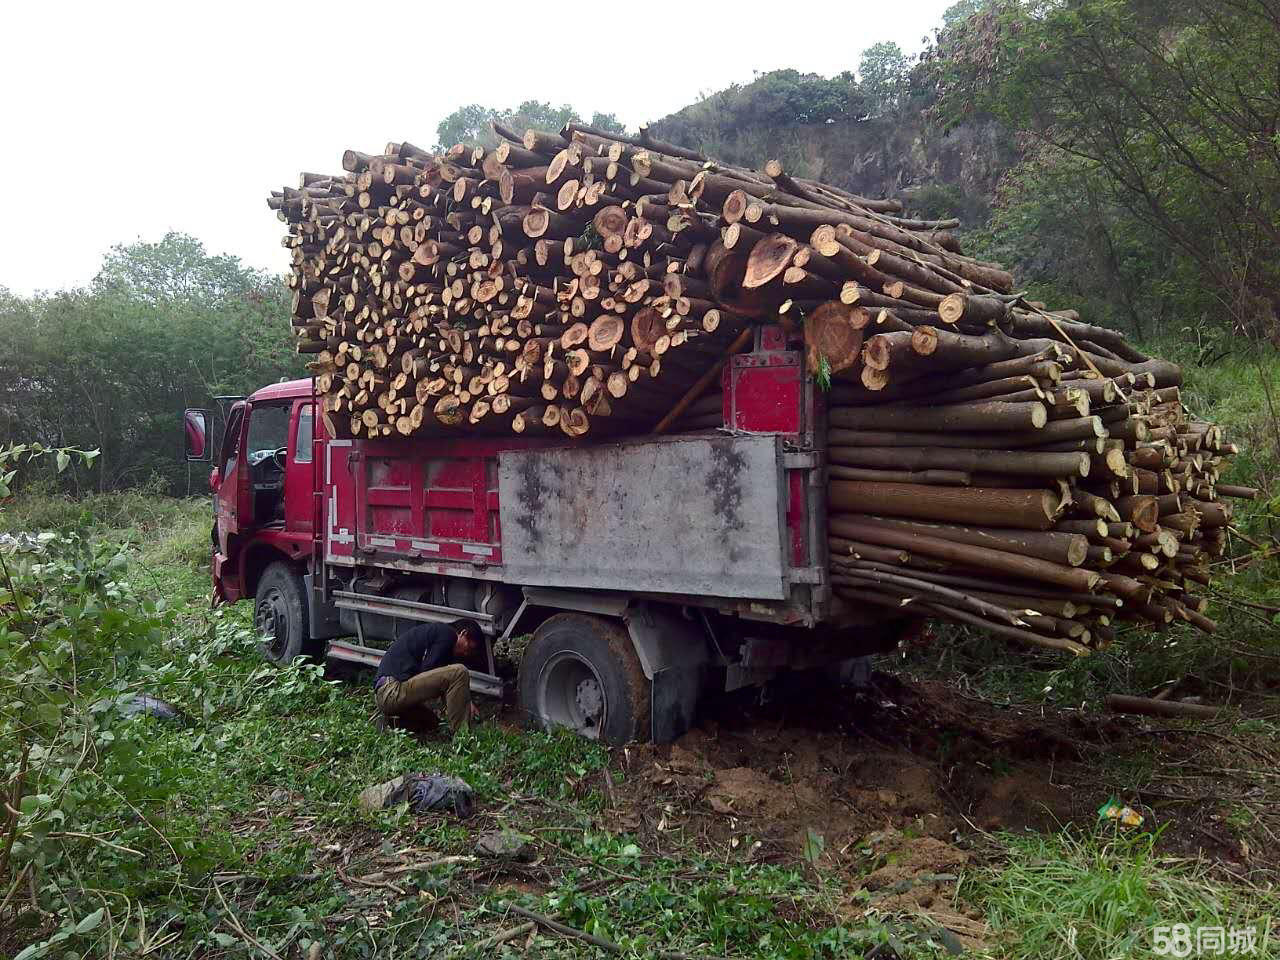 广州砍树 广州专业砍树 学校园区专业砍树工程团队 广州专业砍树工程